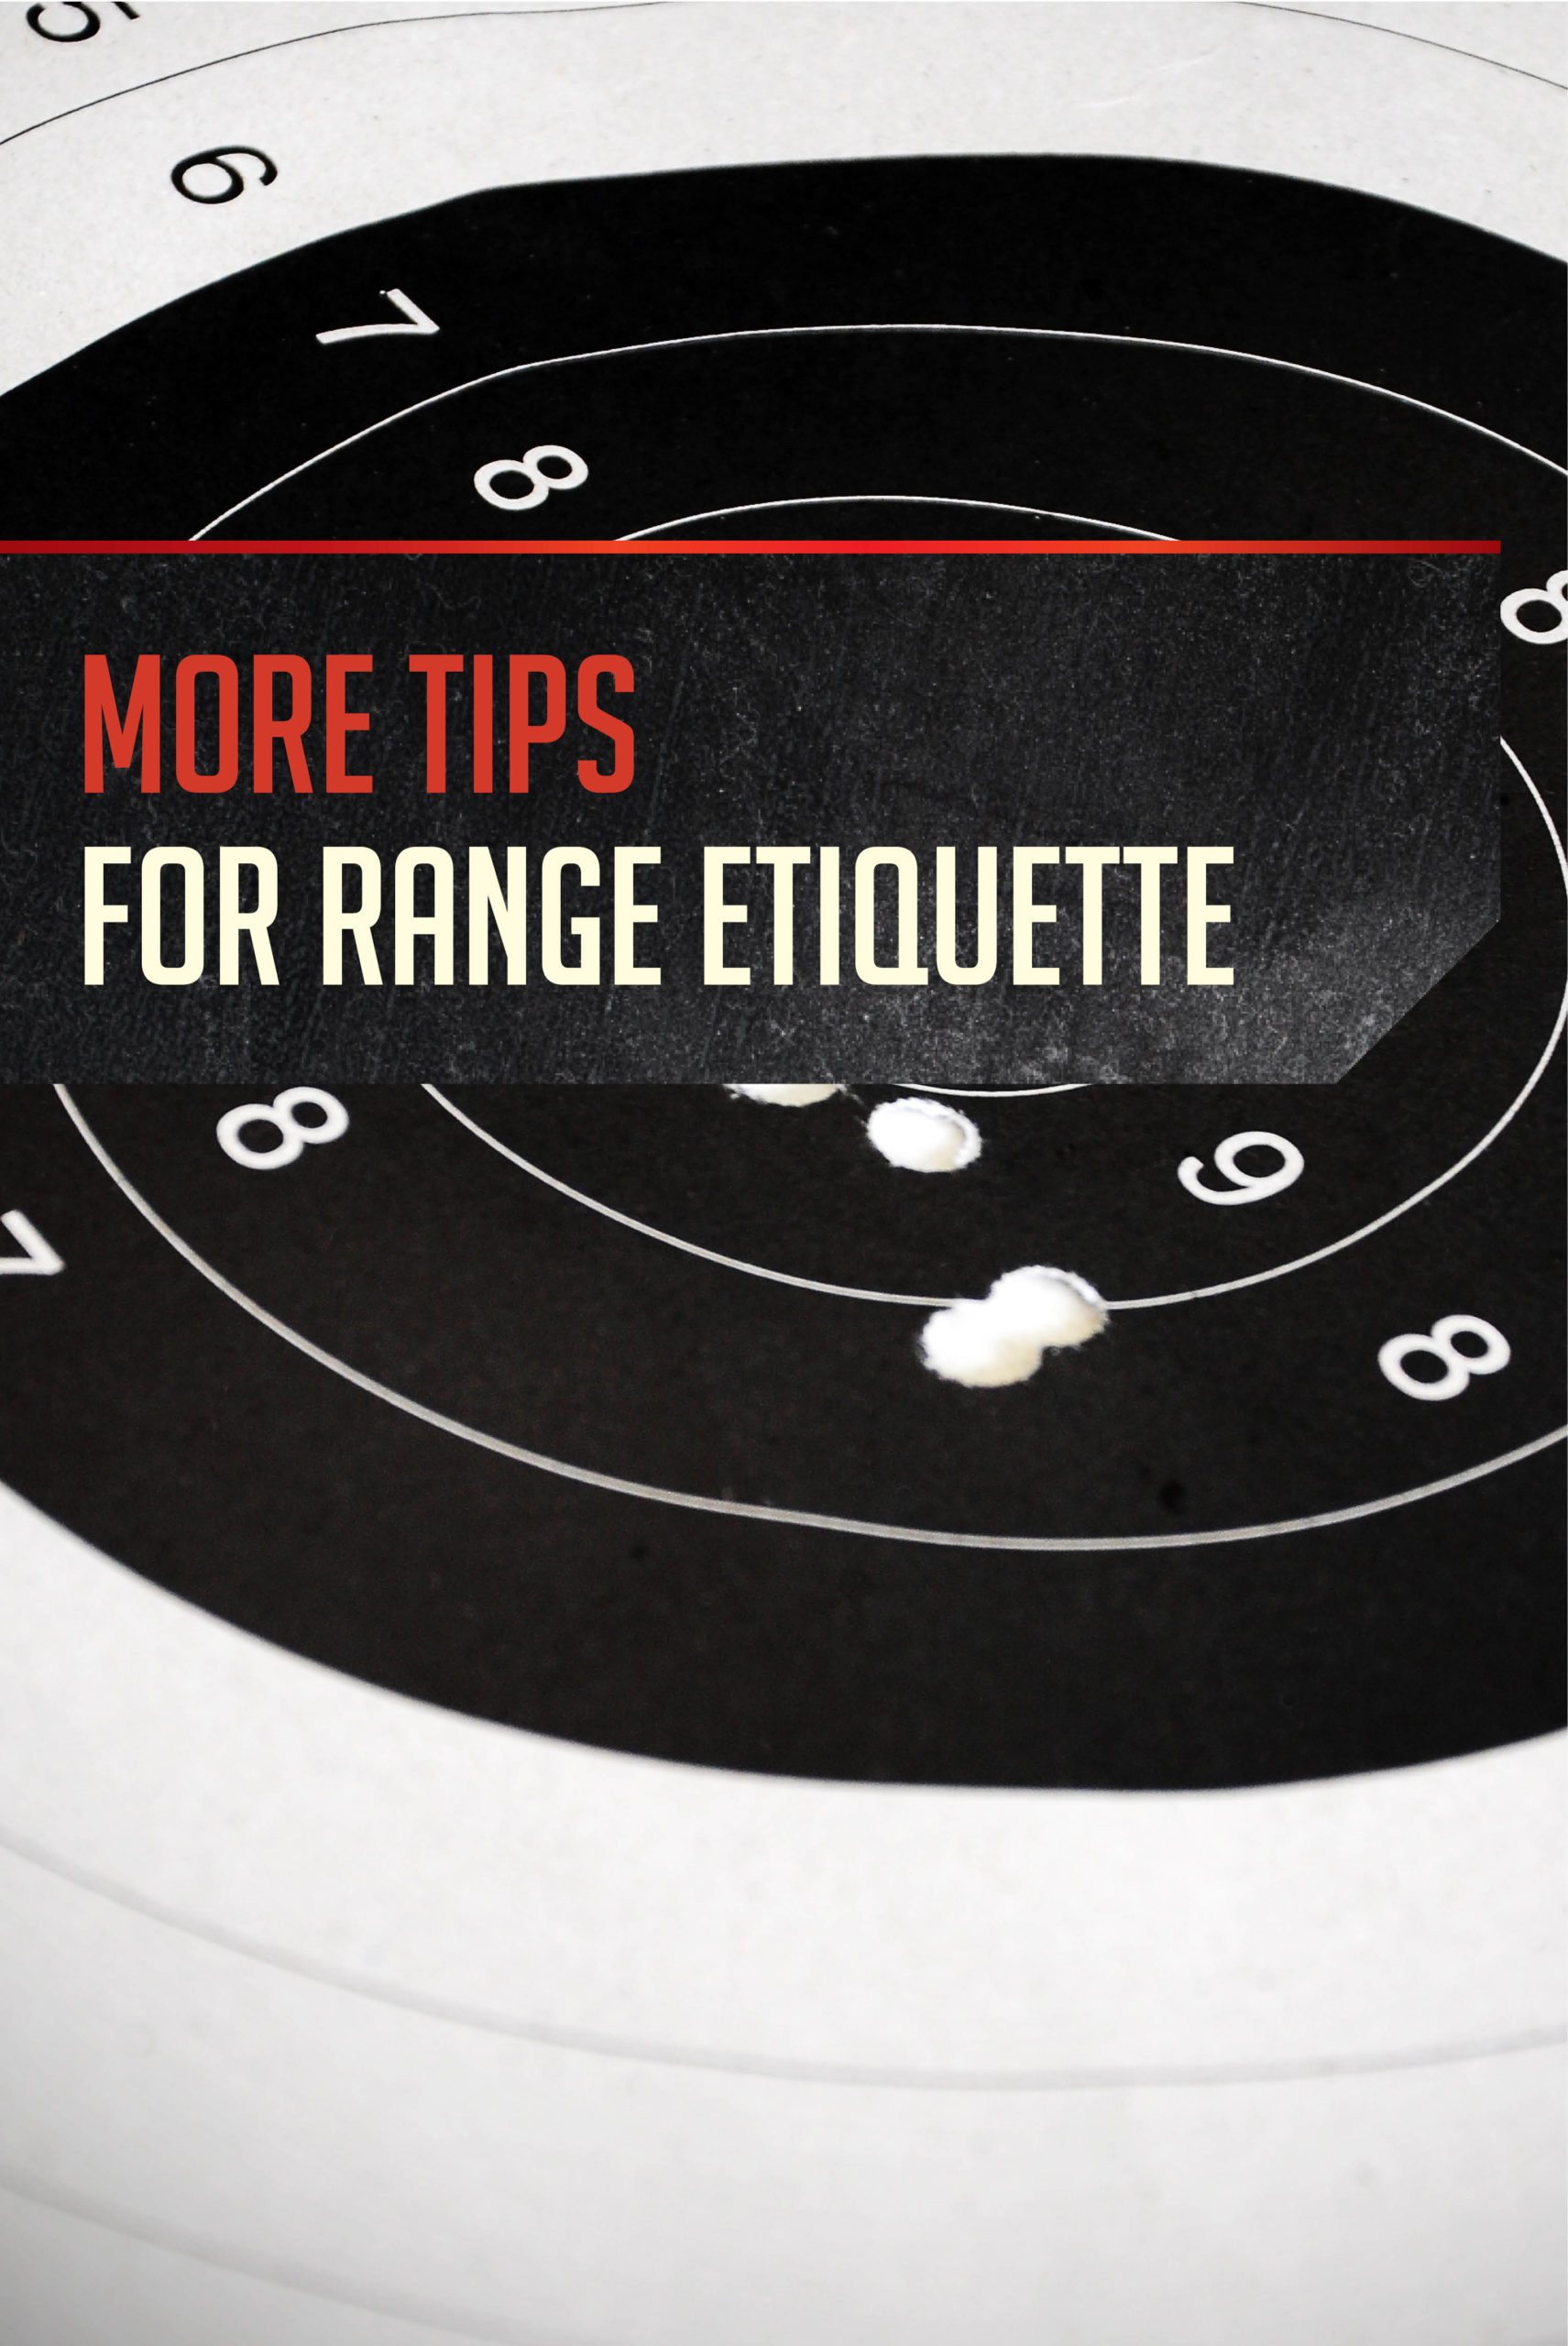 Shooting Range Tips and Etiquette pt. 2 by Gun Carrier at https://guncarrier.com/shooting-range-tips-etiquette-2